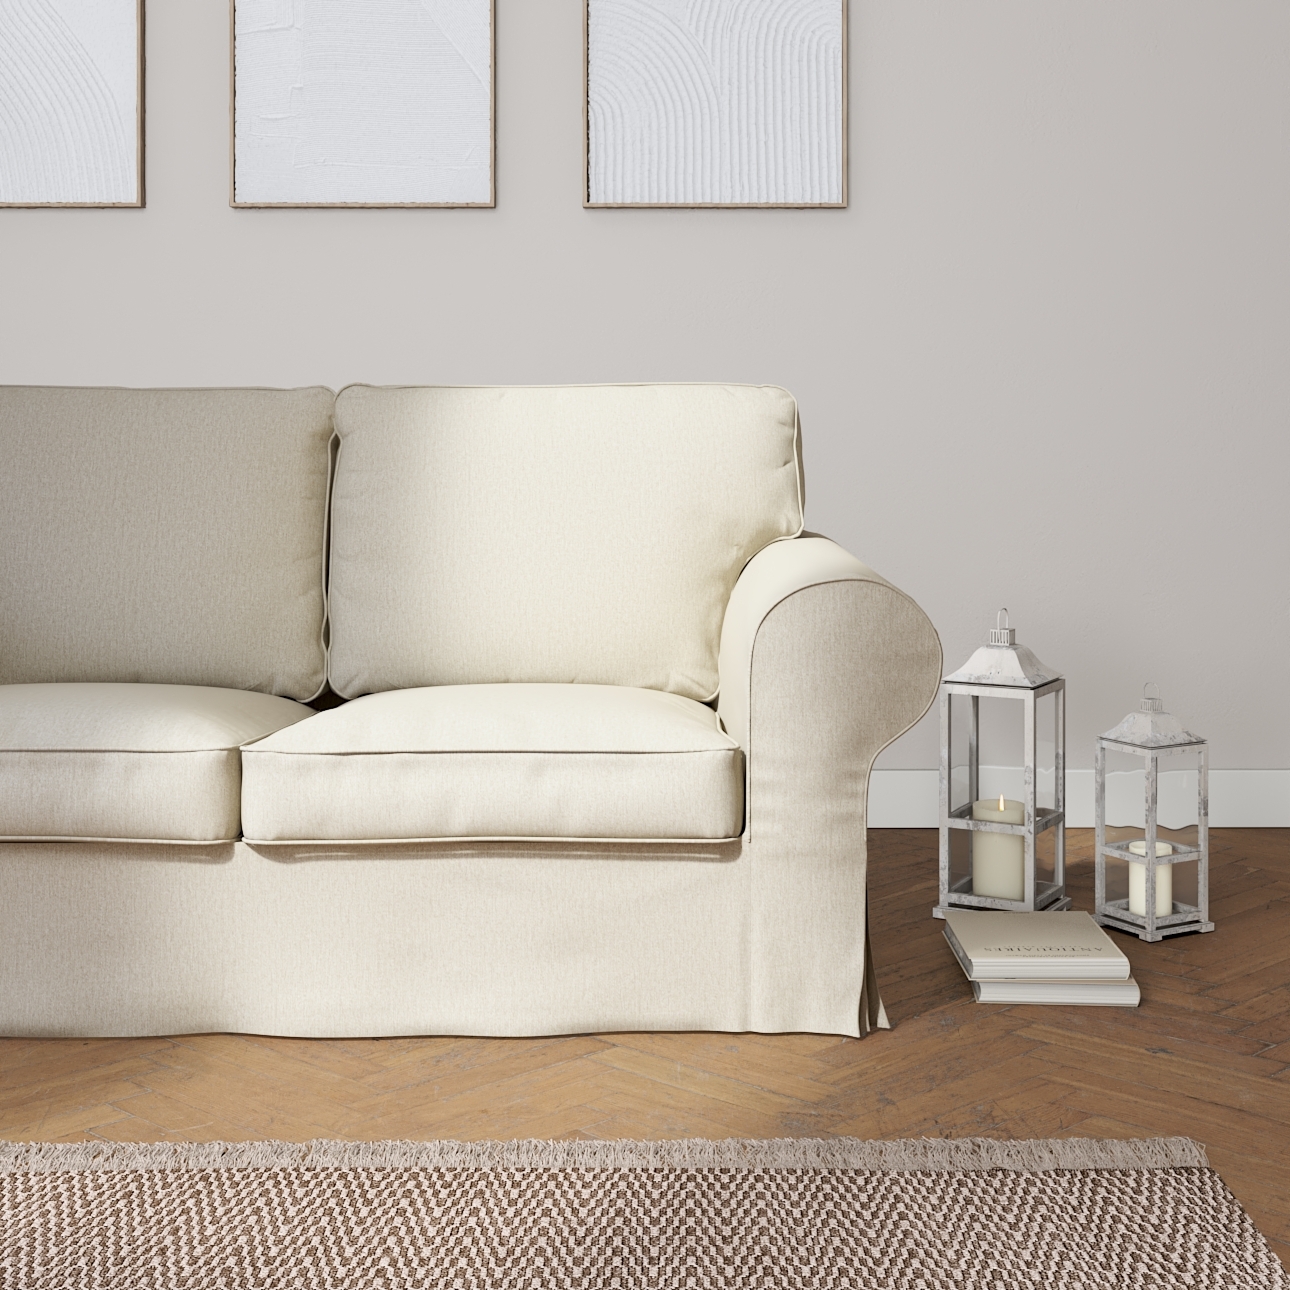 Bezug für Ektorp 2-Sitzer Schlafsofa NEUES Modell, beige-grau, Sofabezug fü günstig online kaufen